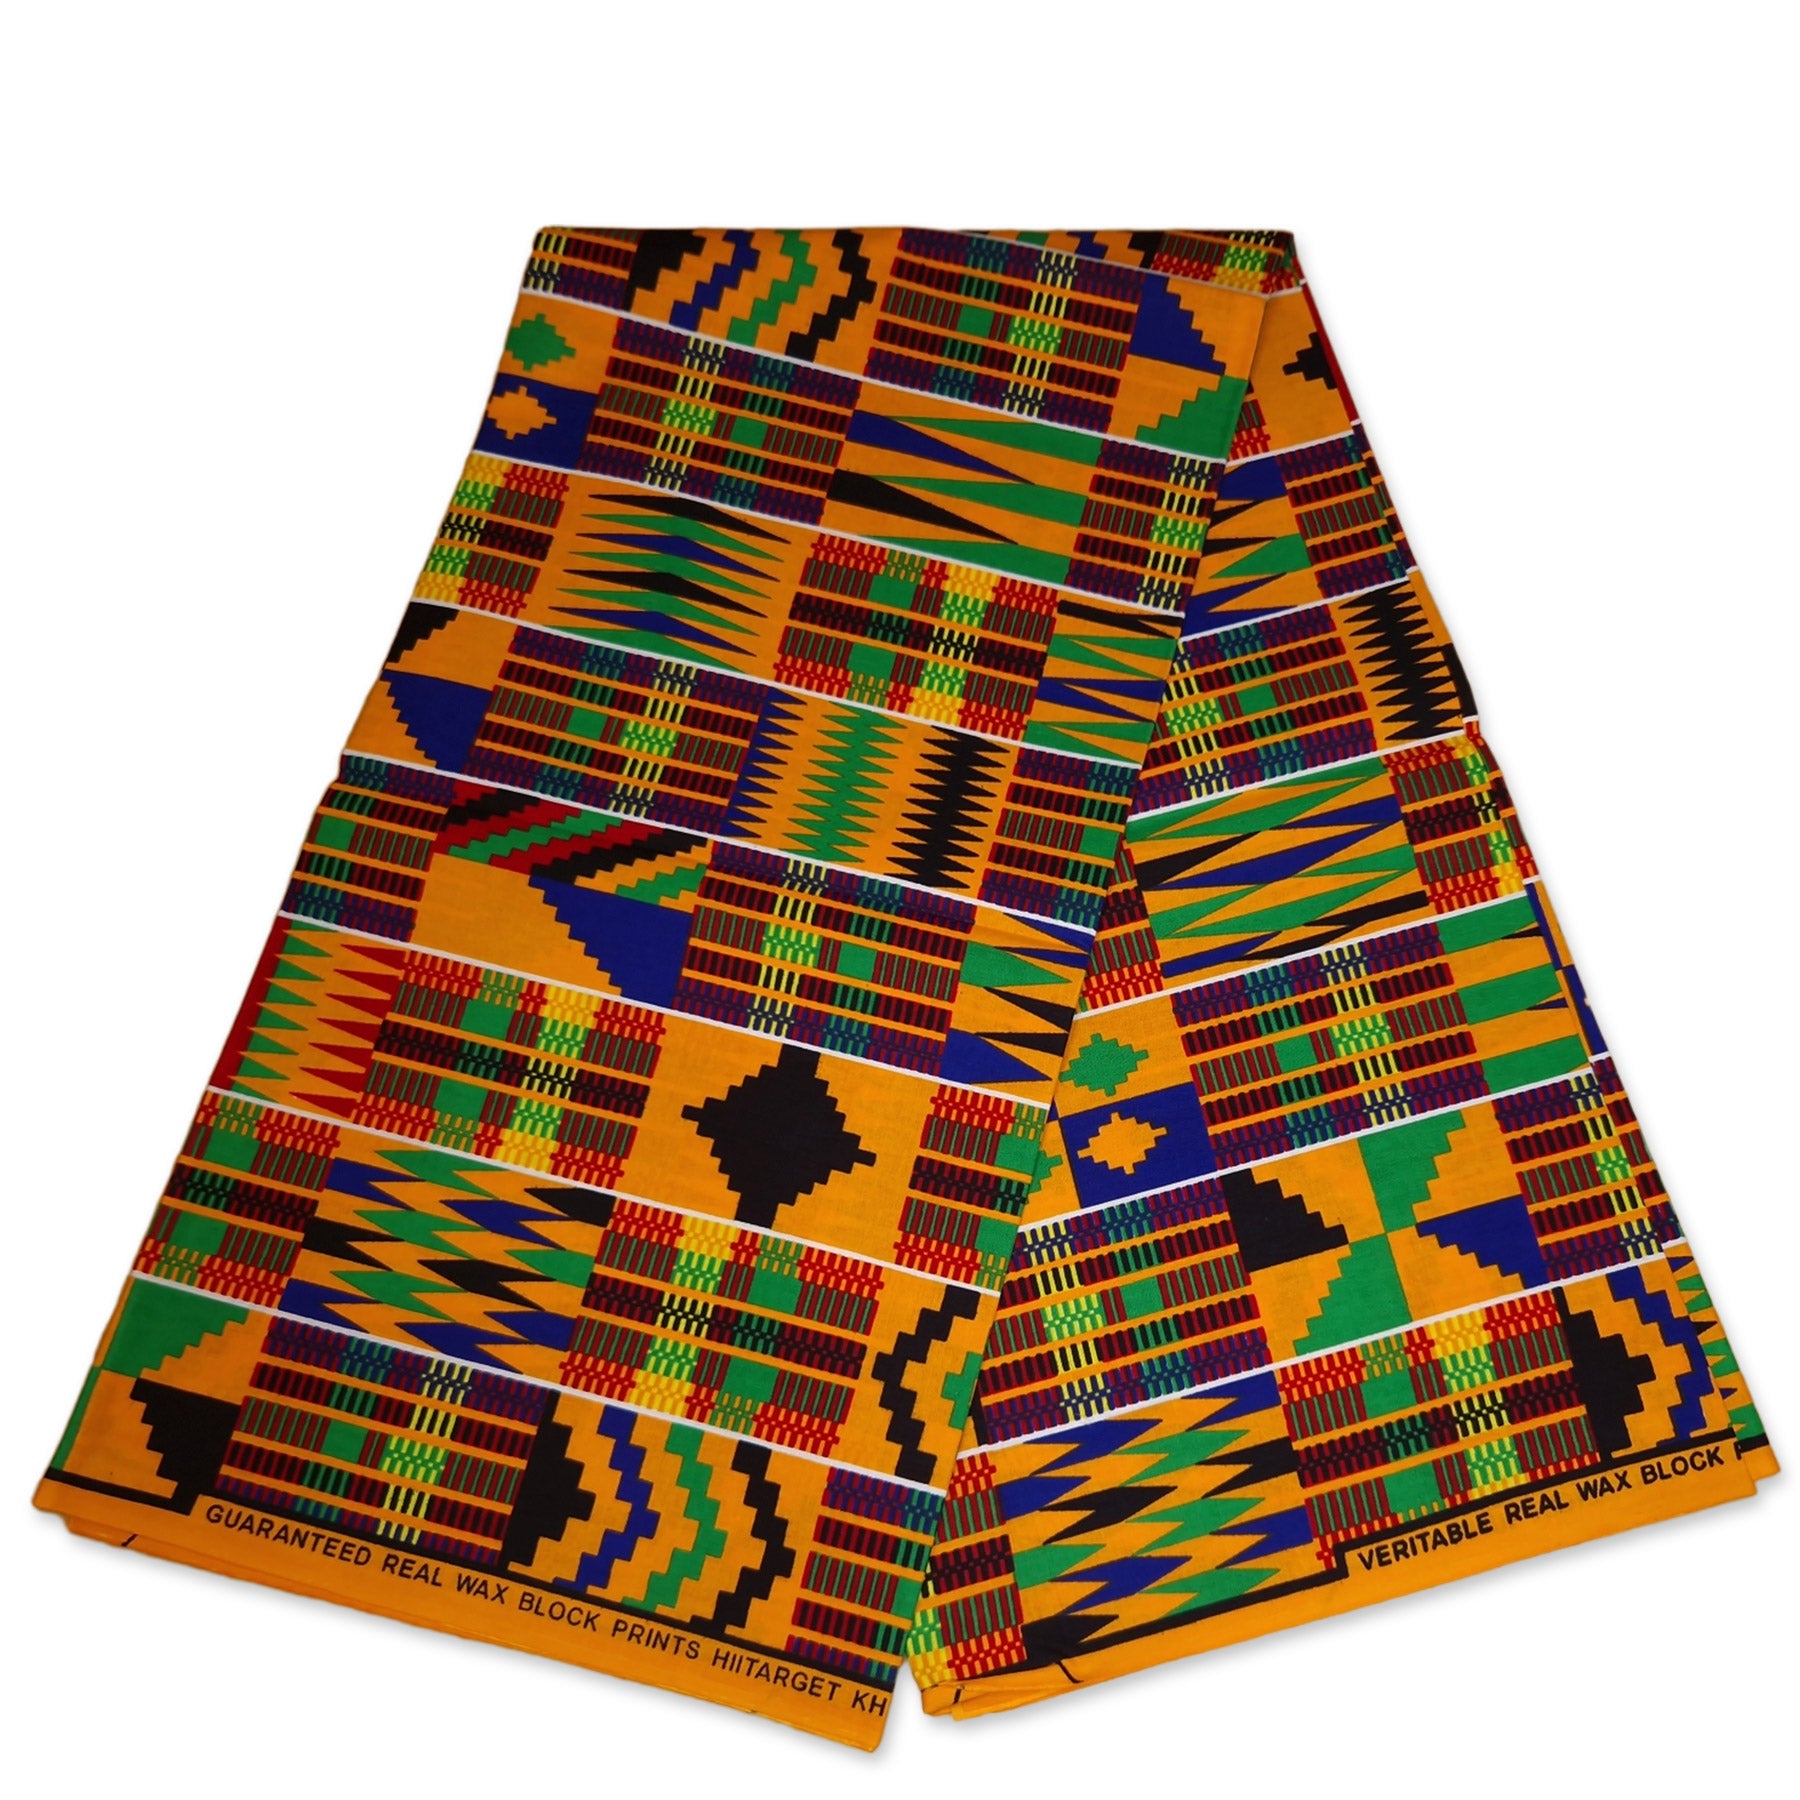 African kente print fabric / Ghana wax cloth KT-3120 - 100% Cotton